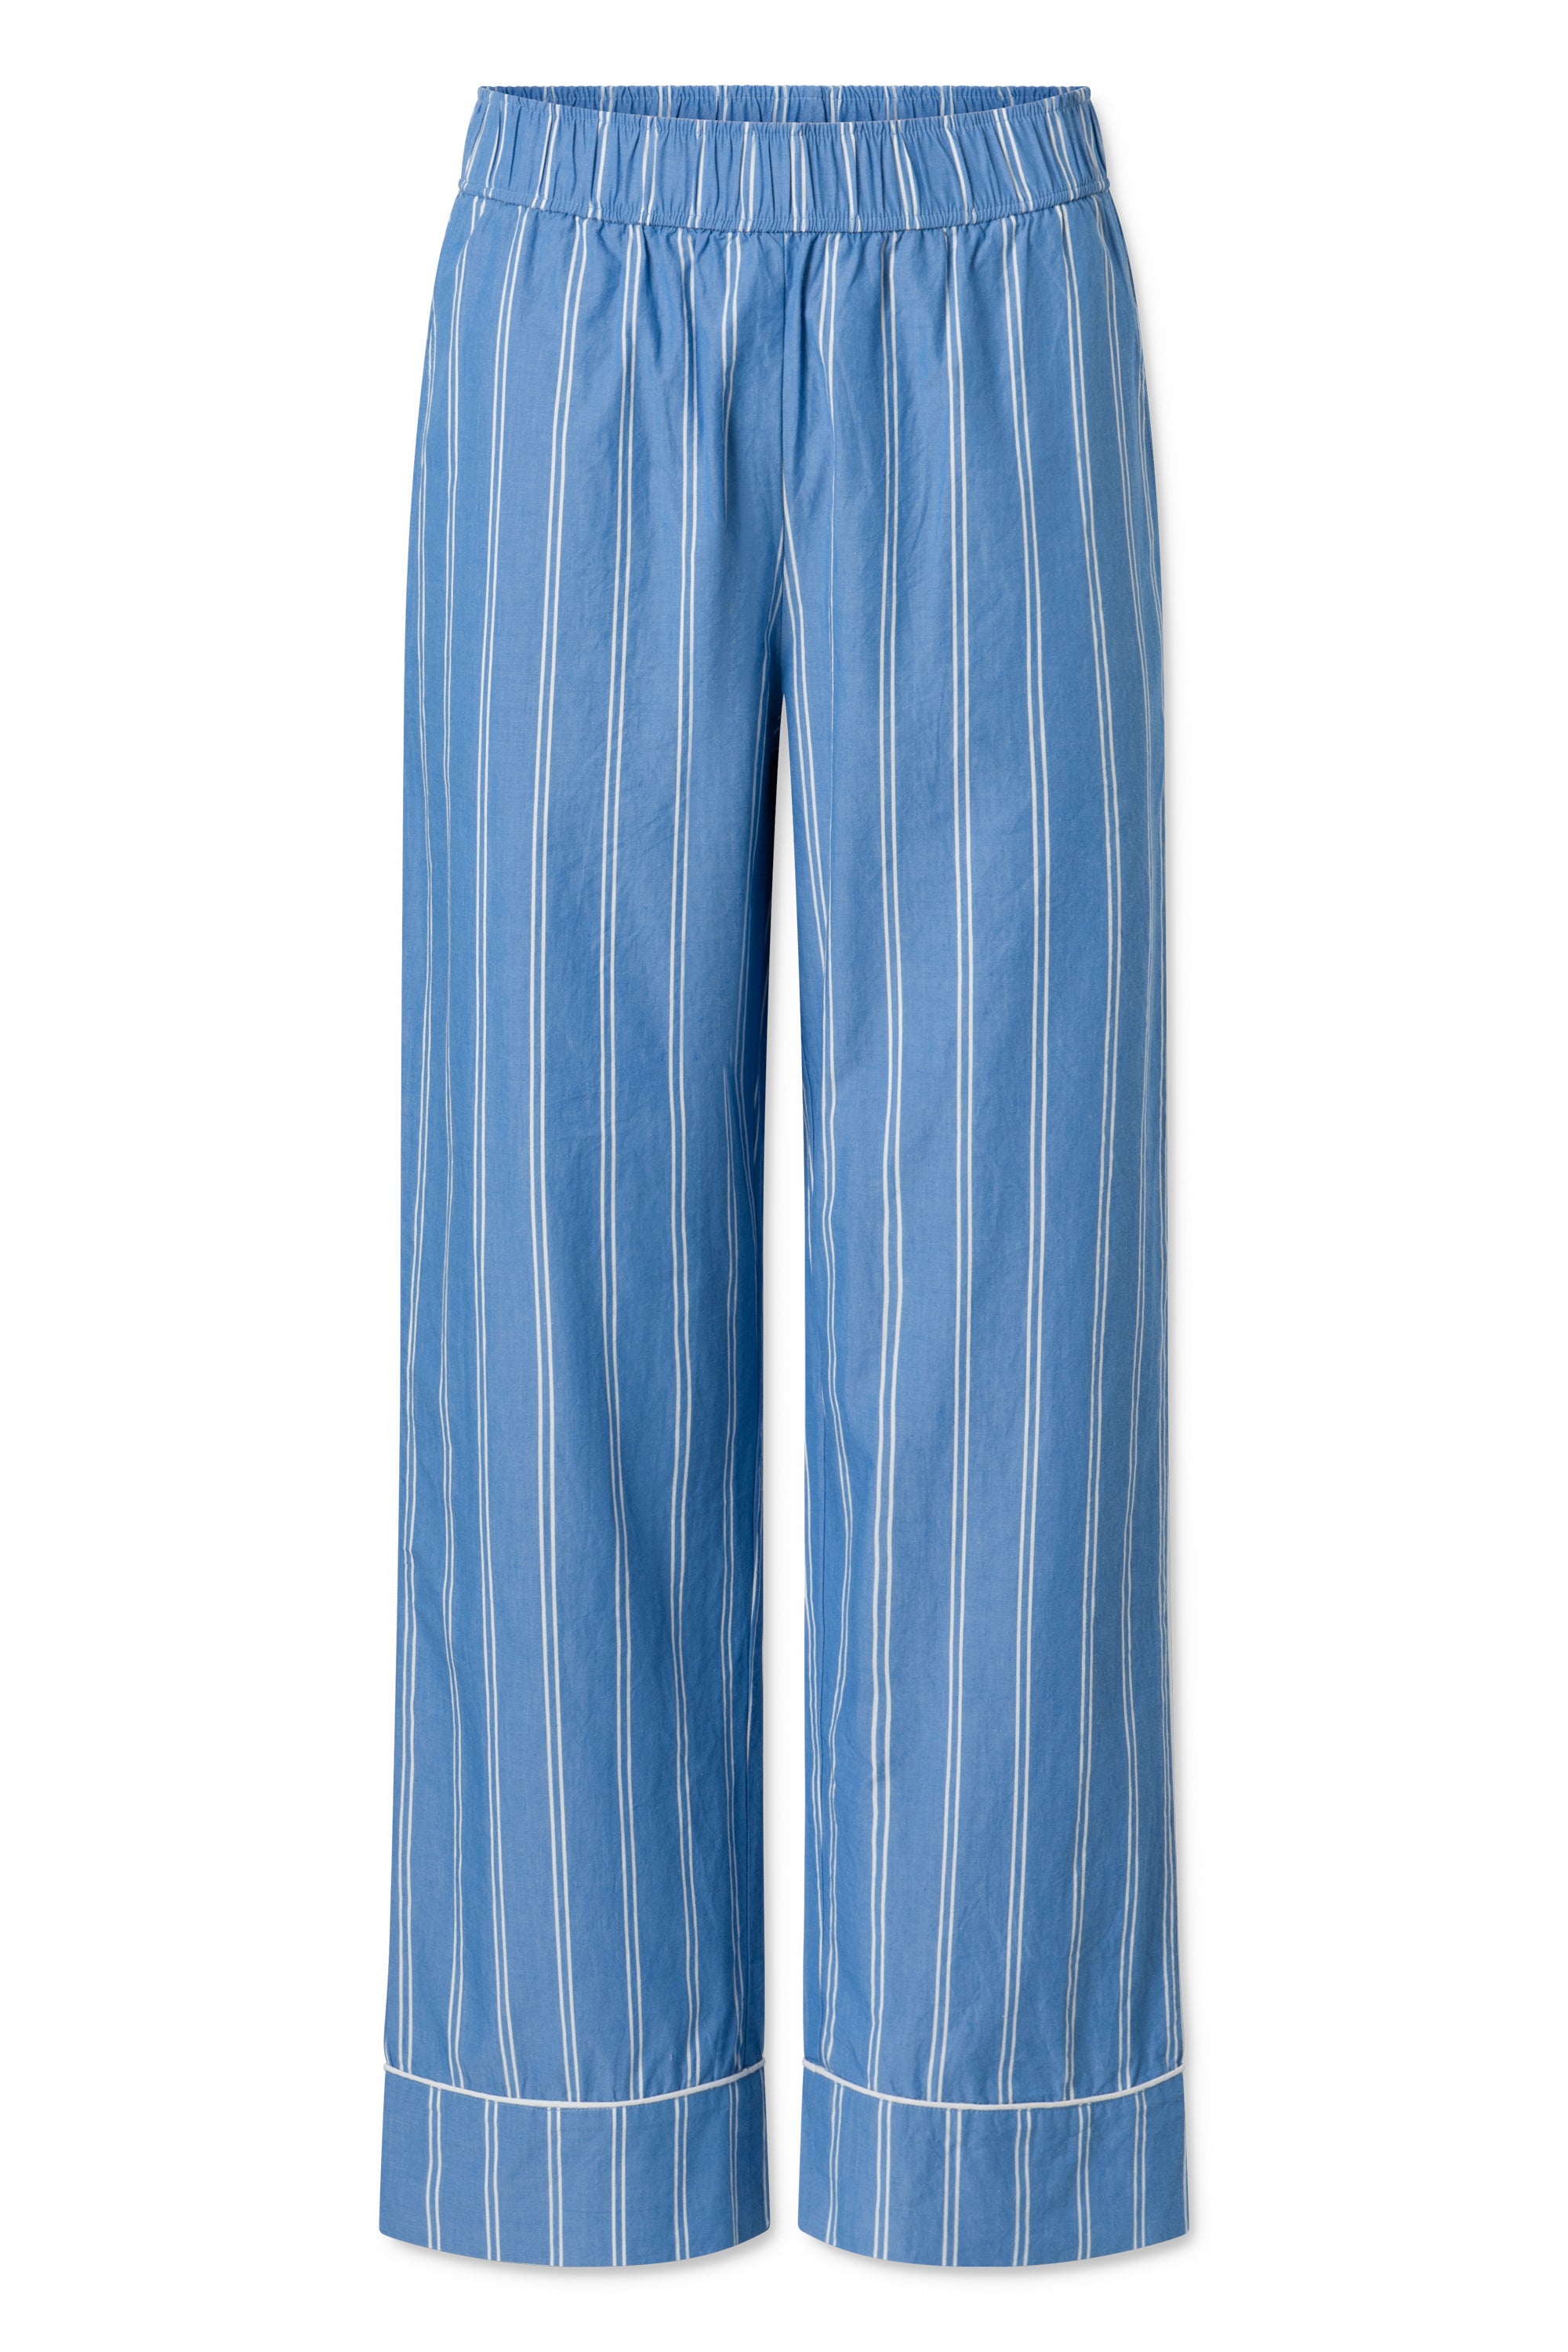 Nué Notes Pablo Pants - Blue Stripe PANTS BLUE STRIPE